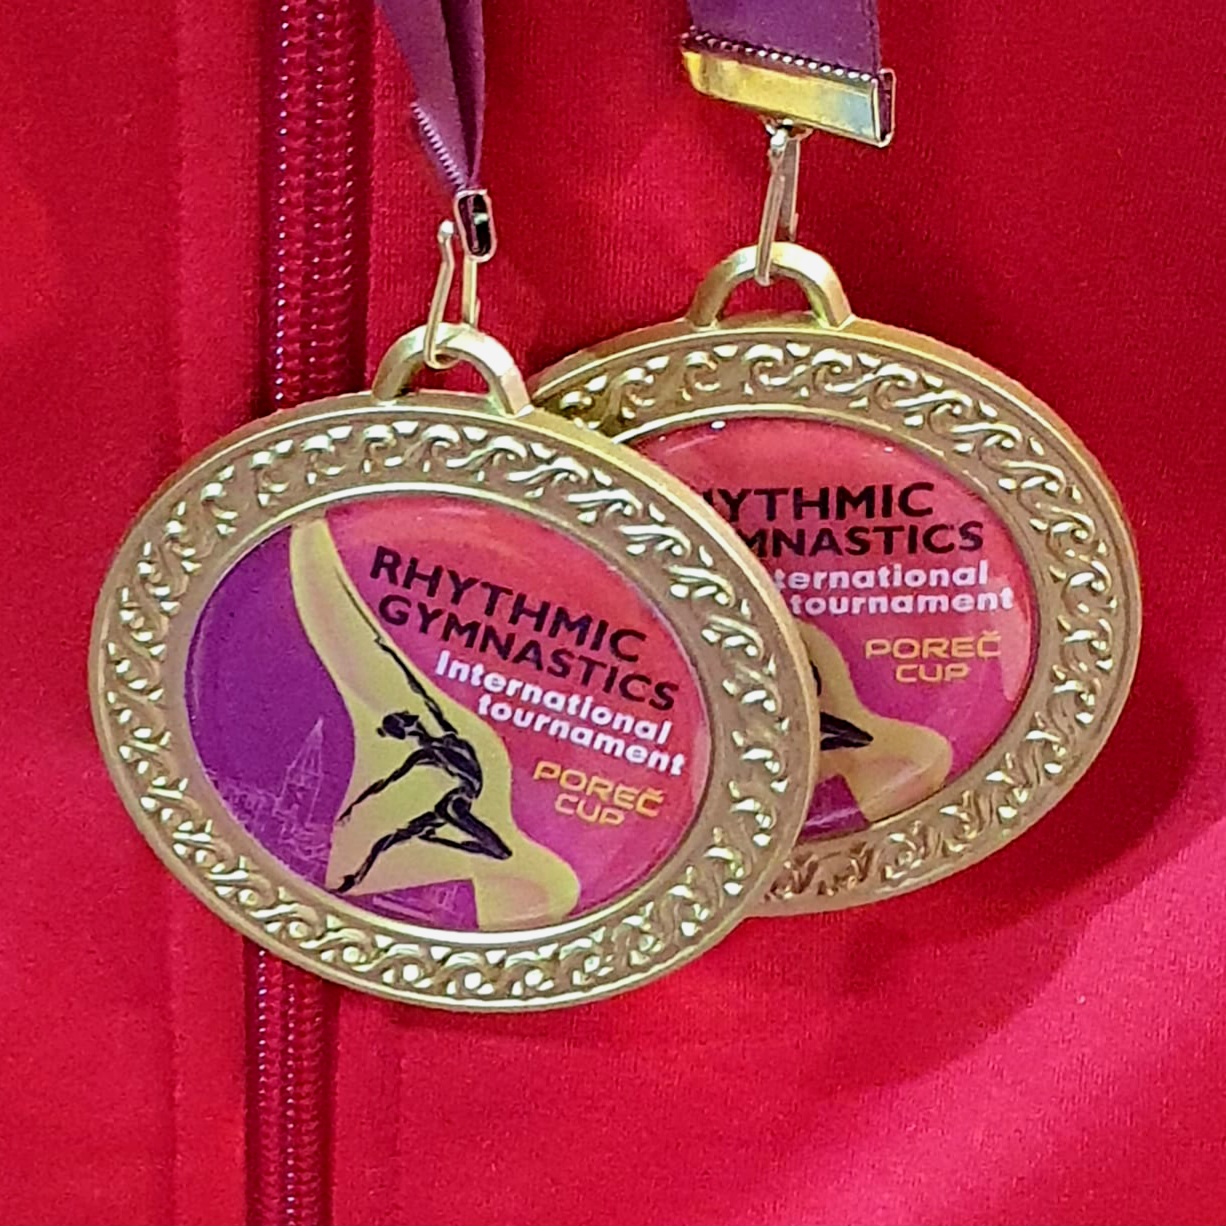 Fünfmal Gold für Rhythmische Gymnastik in Porec